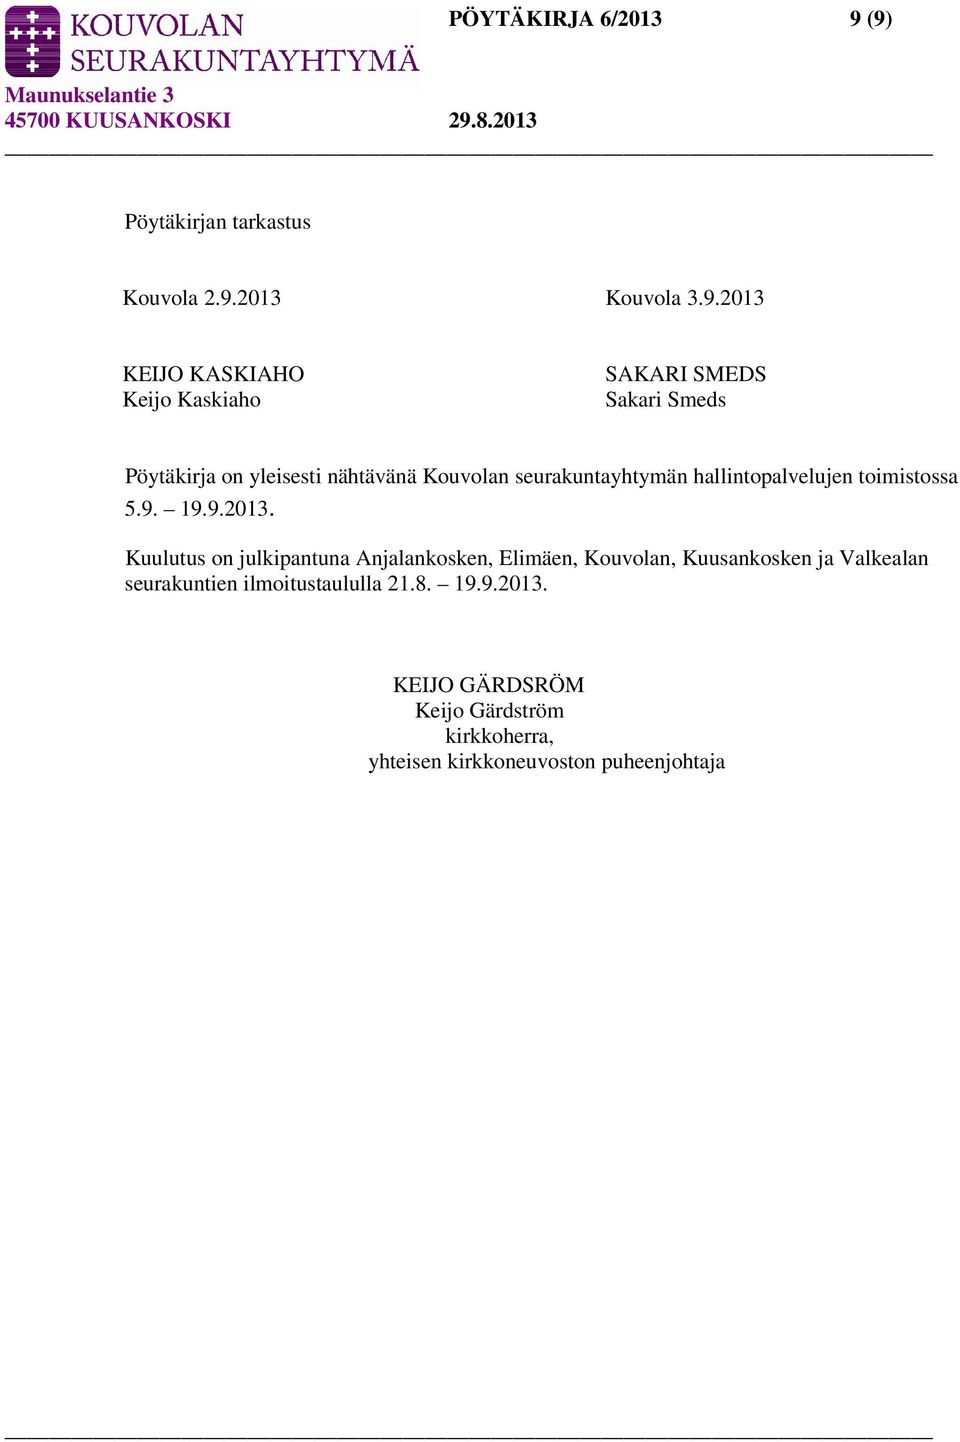 Smeds Pöytäkirja on yleisesti nähtävänä Kouvolan seurakuntayhtymän hallintopalvelujen toimistossa 5.9. 19.9.2013.